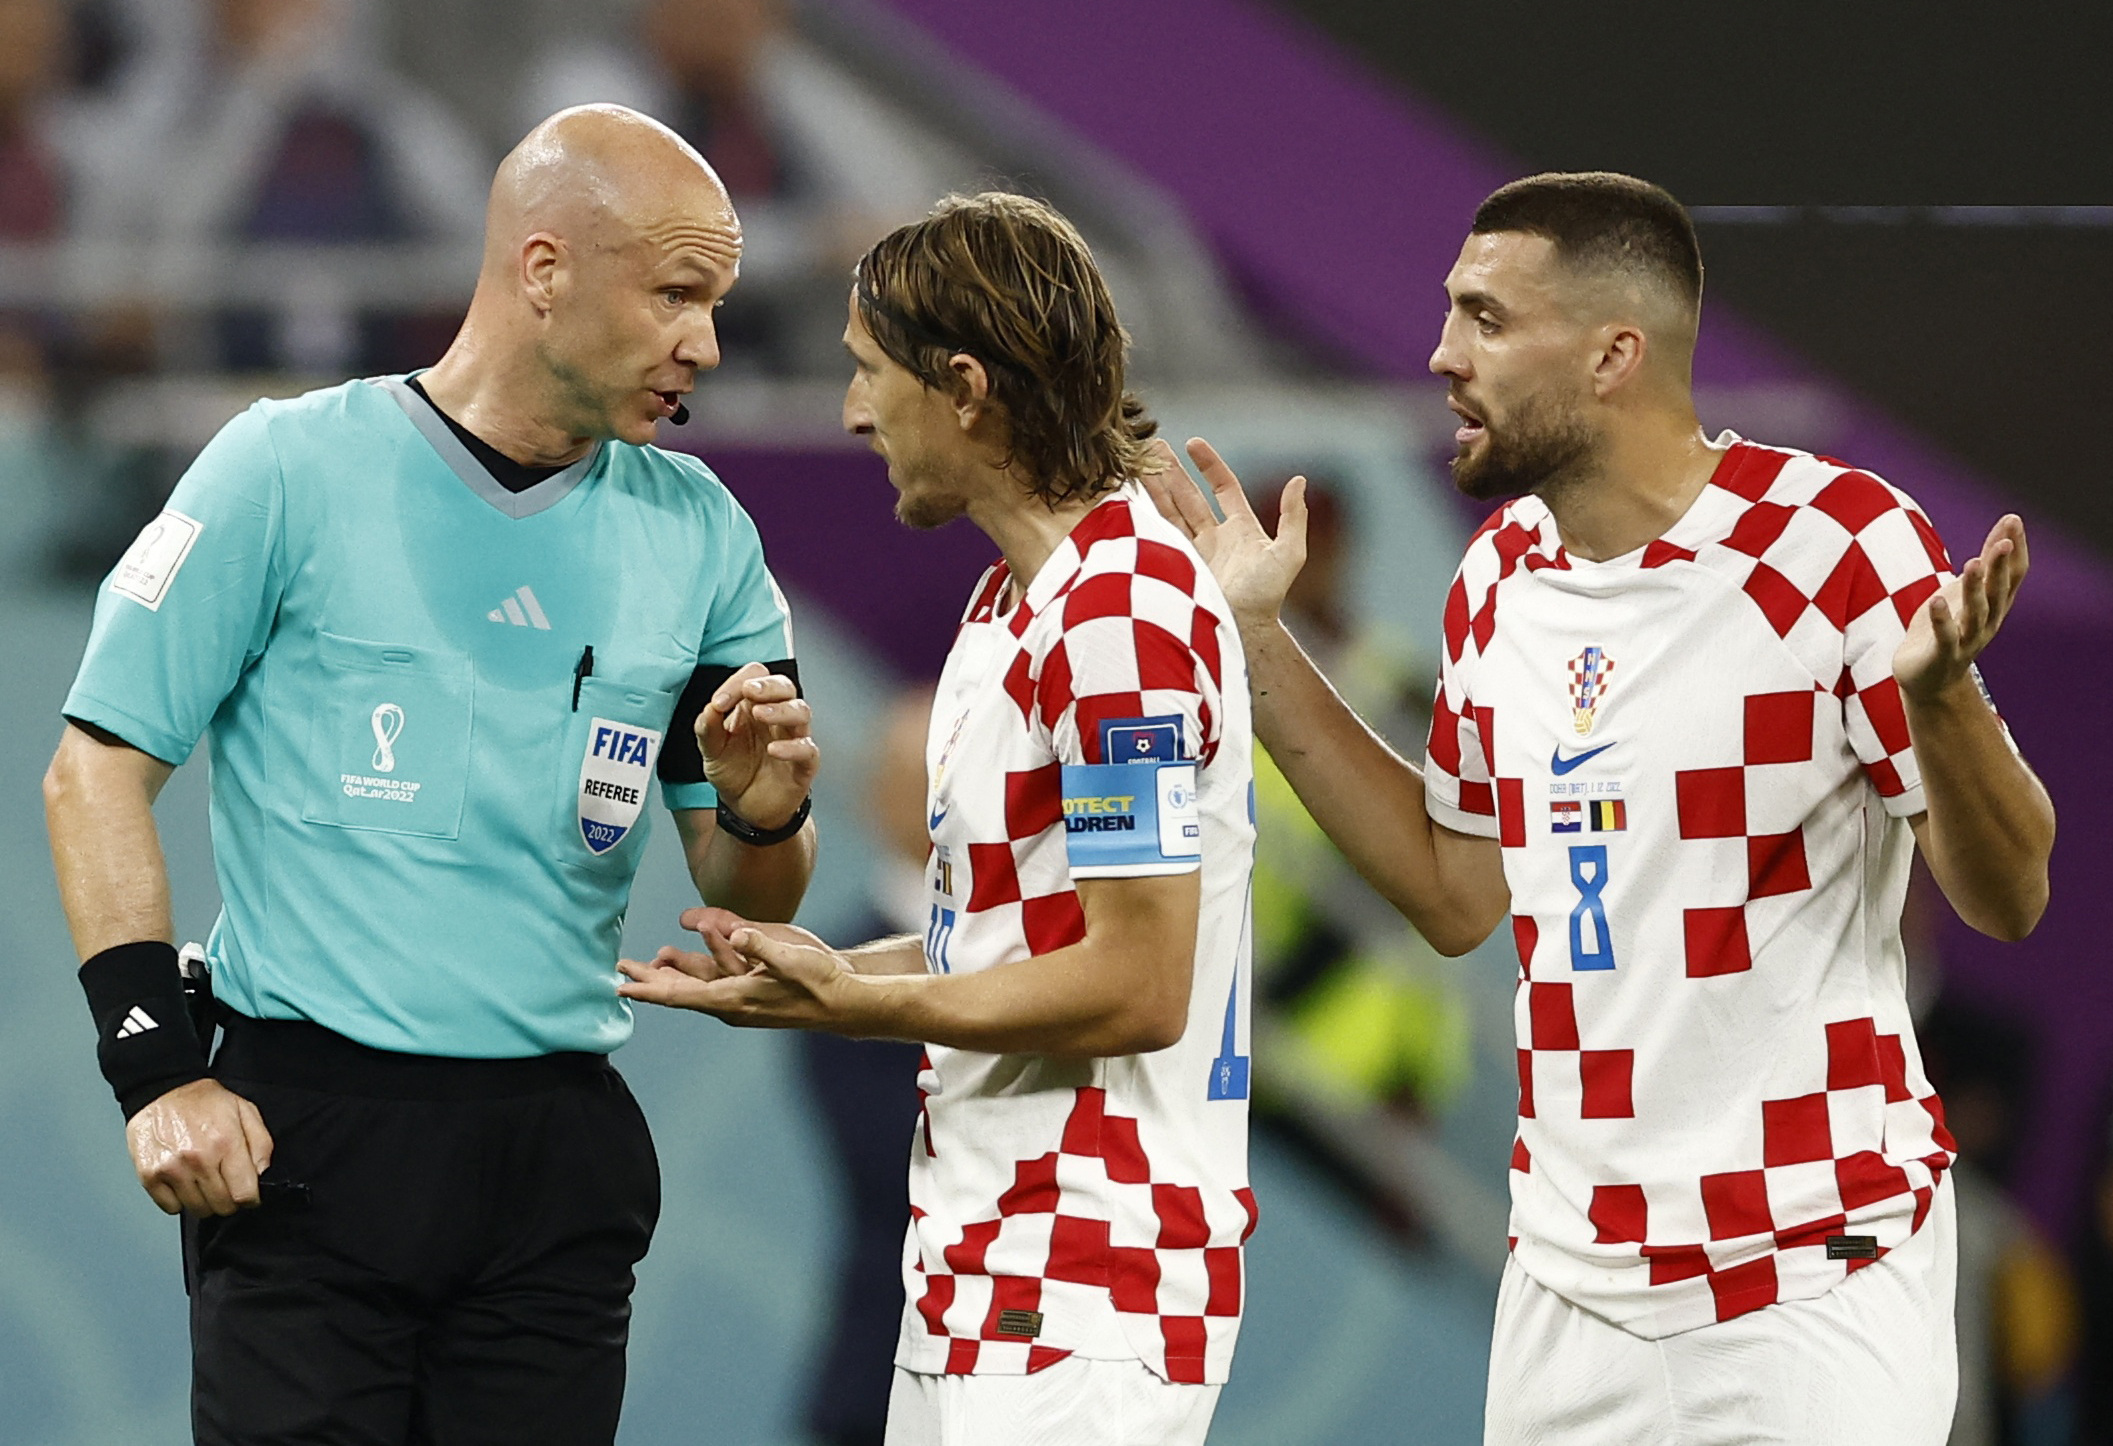 Al final, el juez anuló el penal a Croacia por posición adelantada en acción previa, por el Mundial Qatar 2022. REUTERS/Stephane Mahe